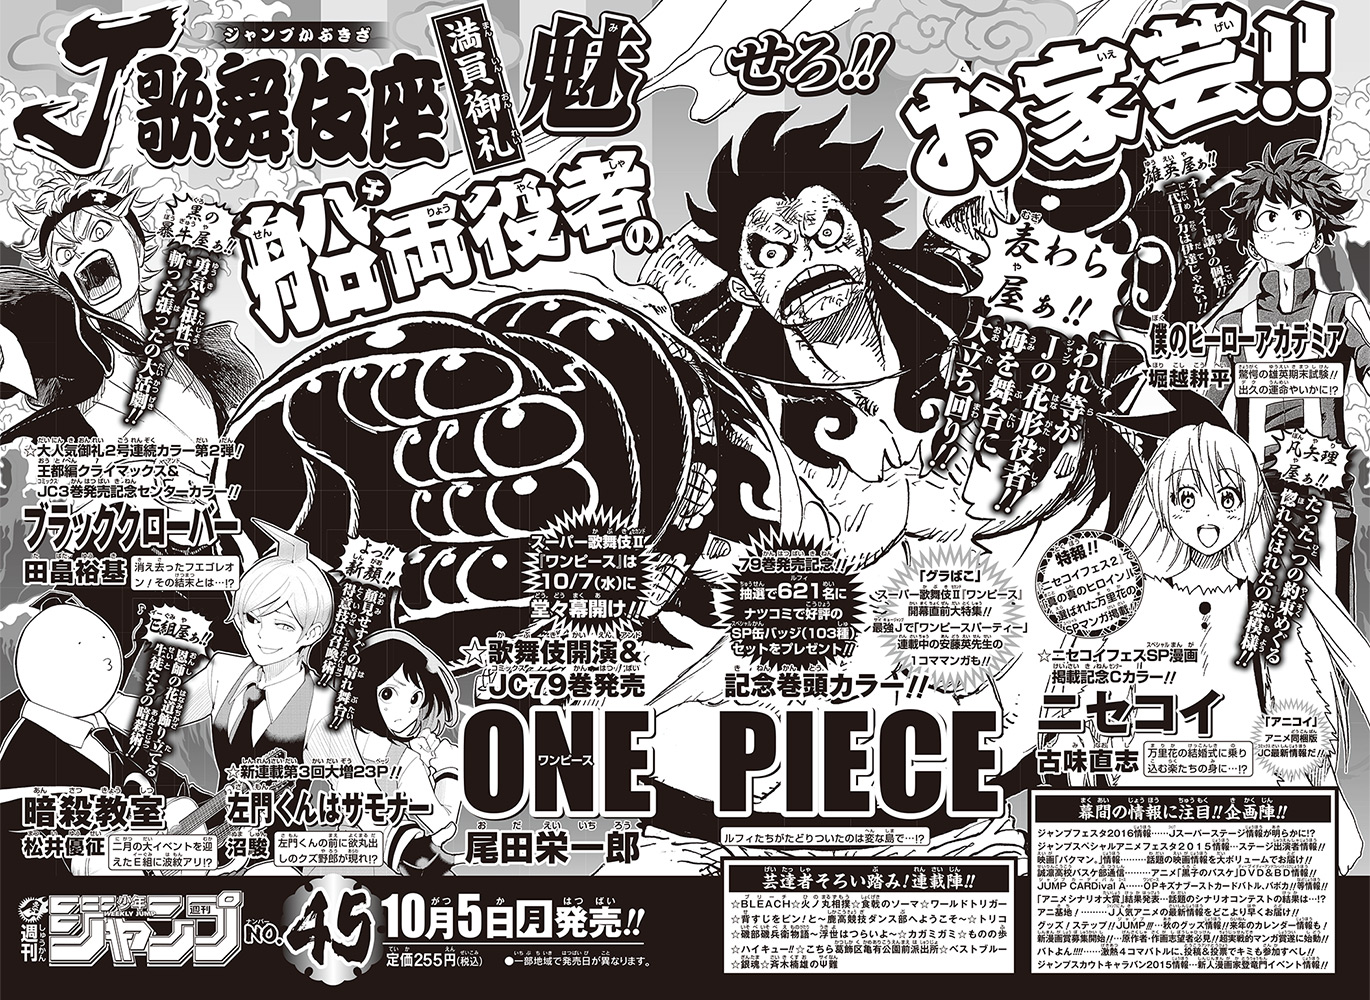 One Piece Manga 658 pausiert nächste Woche! - Seite 2 NextImg_big